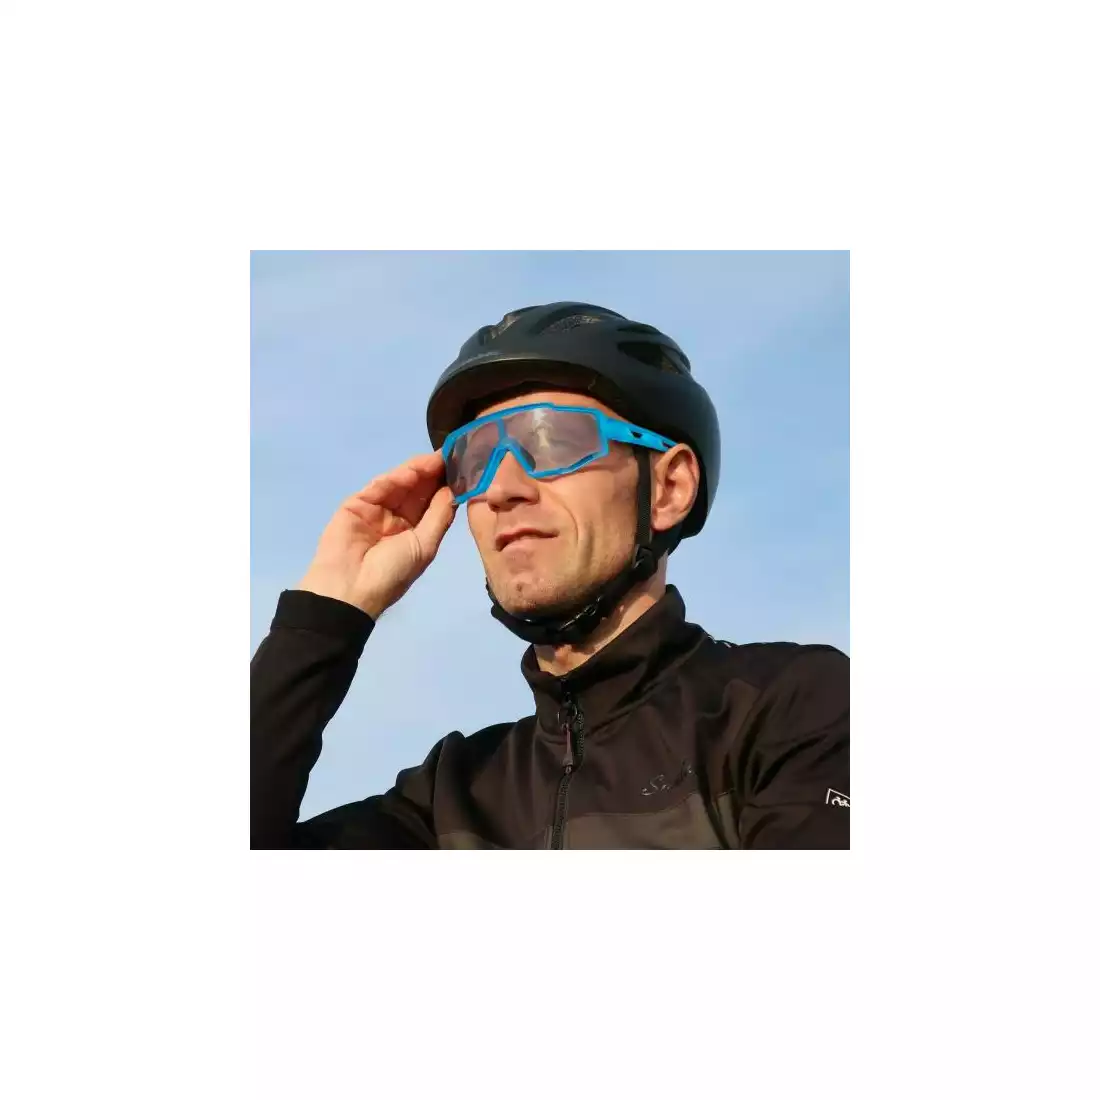 Rockbros SP225BL okulary rowerowe / sportowe z fotochromem niebieskie